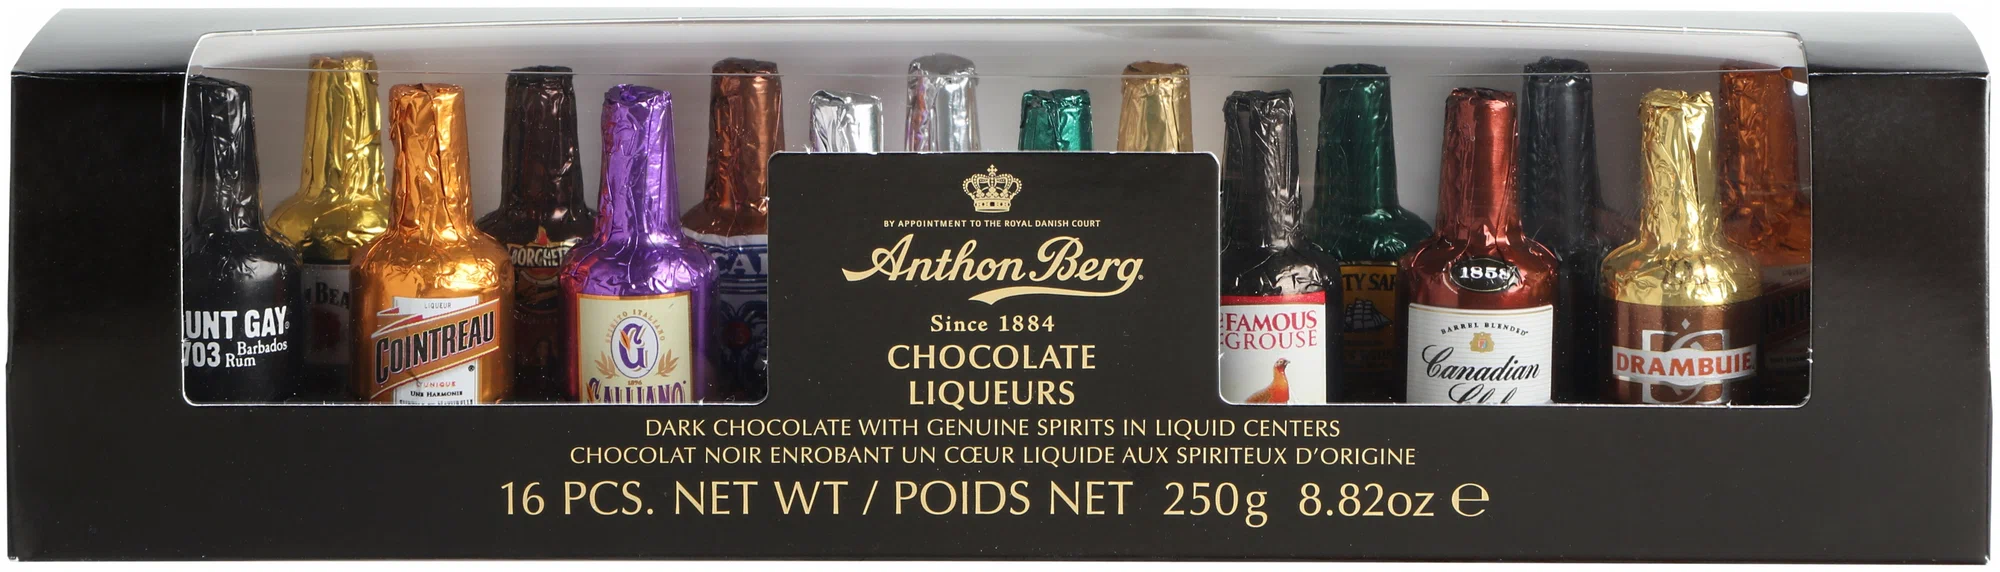 Шоколадные конфеты Anthon Berg бутылочки с премиальным алког. 